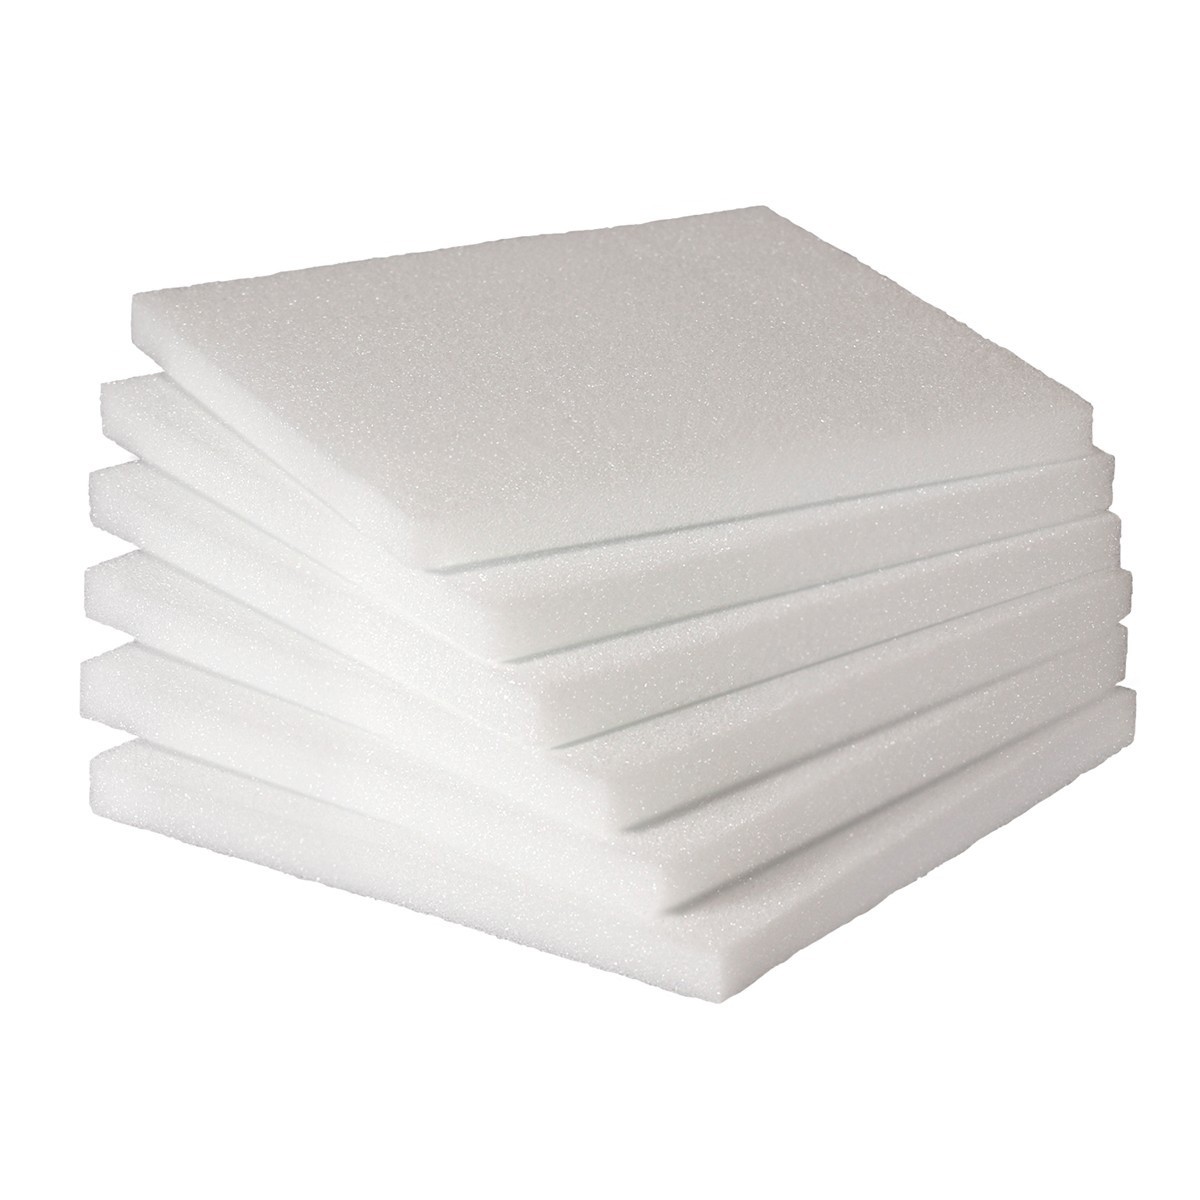 EconoCrafts: Styrofoam Sheet - 6